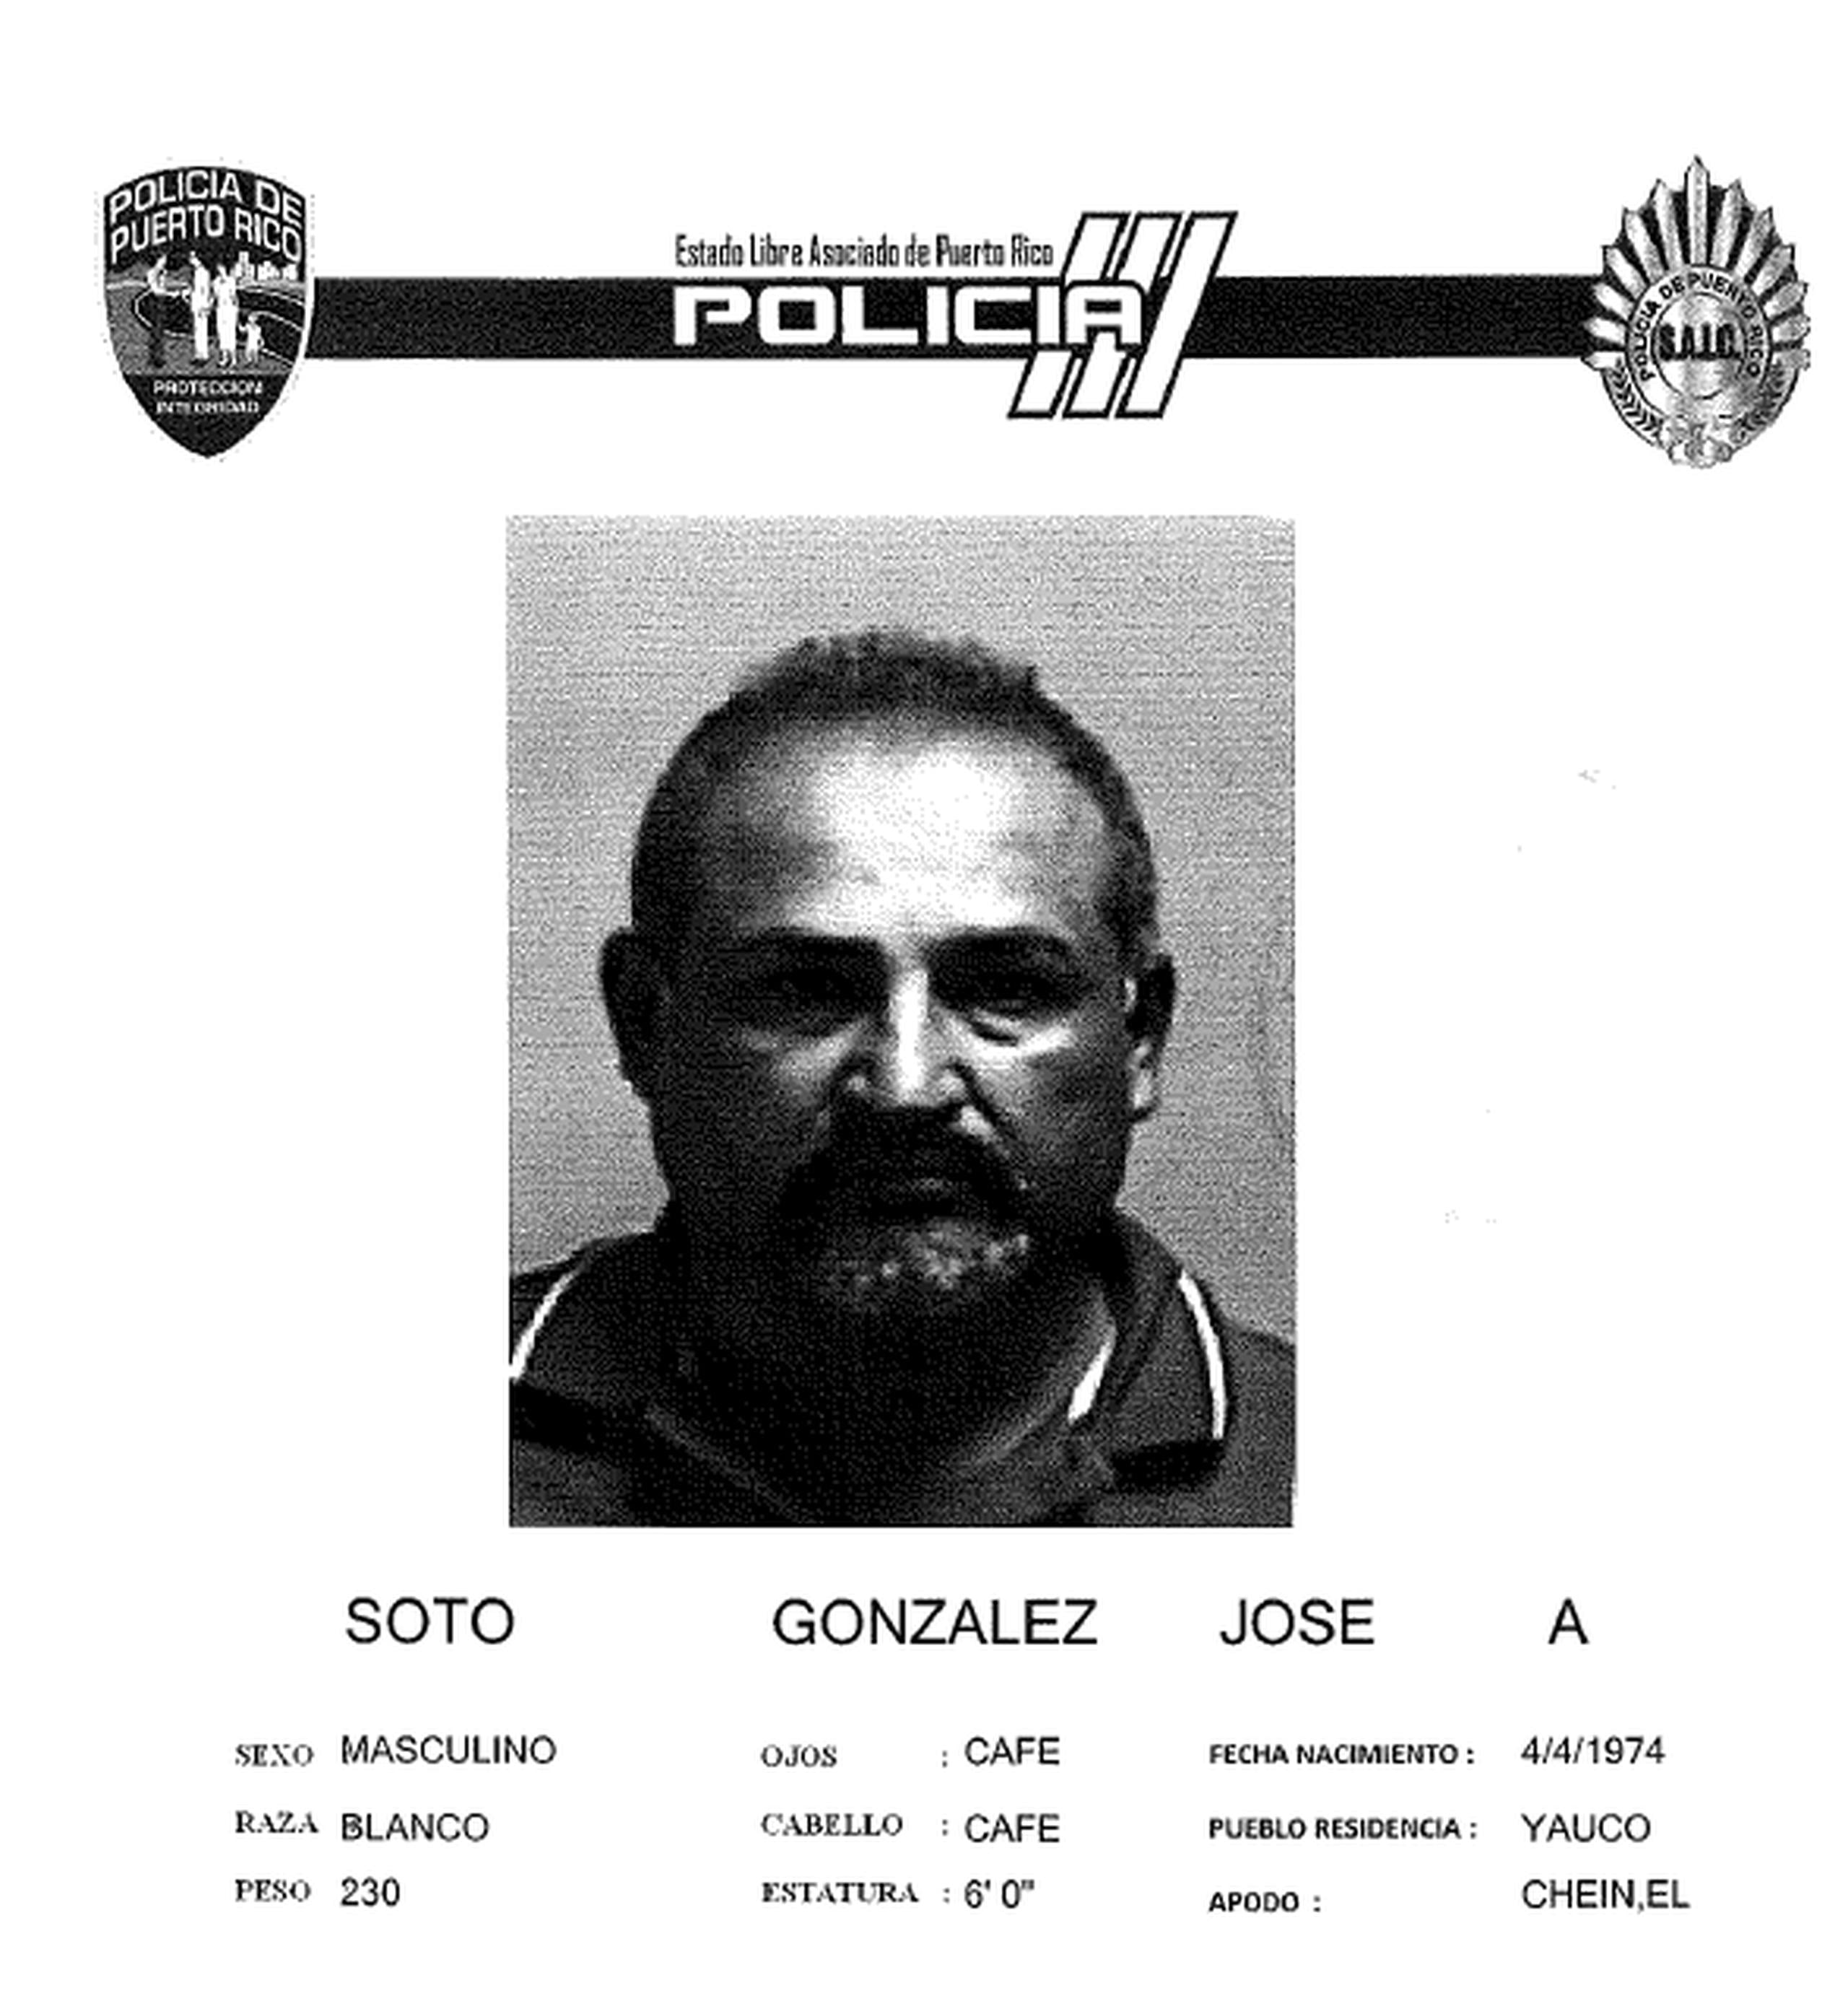 José A. Soto González